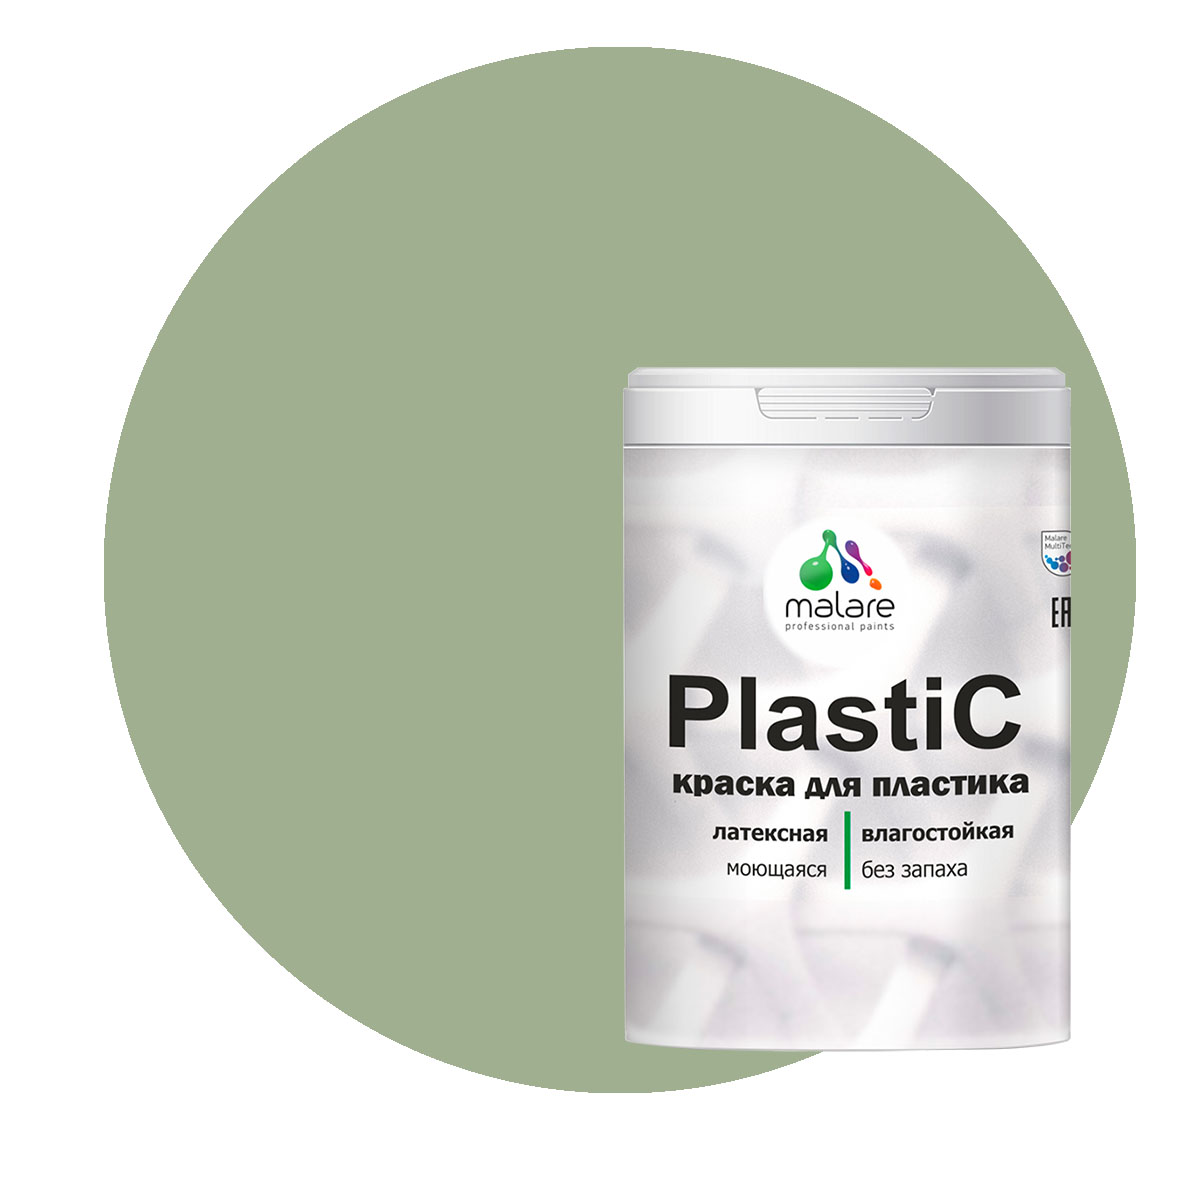 Краска Malare PlastiC для пластика, ПВХ, для сайдинга, лиственный зеленый, 1 кг. краска malare plastic для пластика пвх для сайдинга зеленый мичиган 2 кг